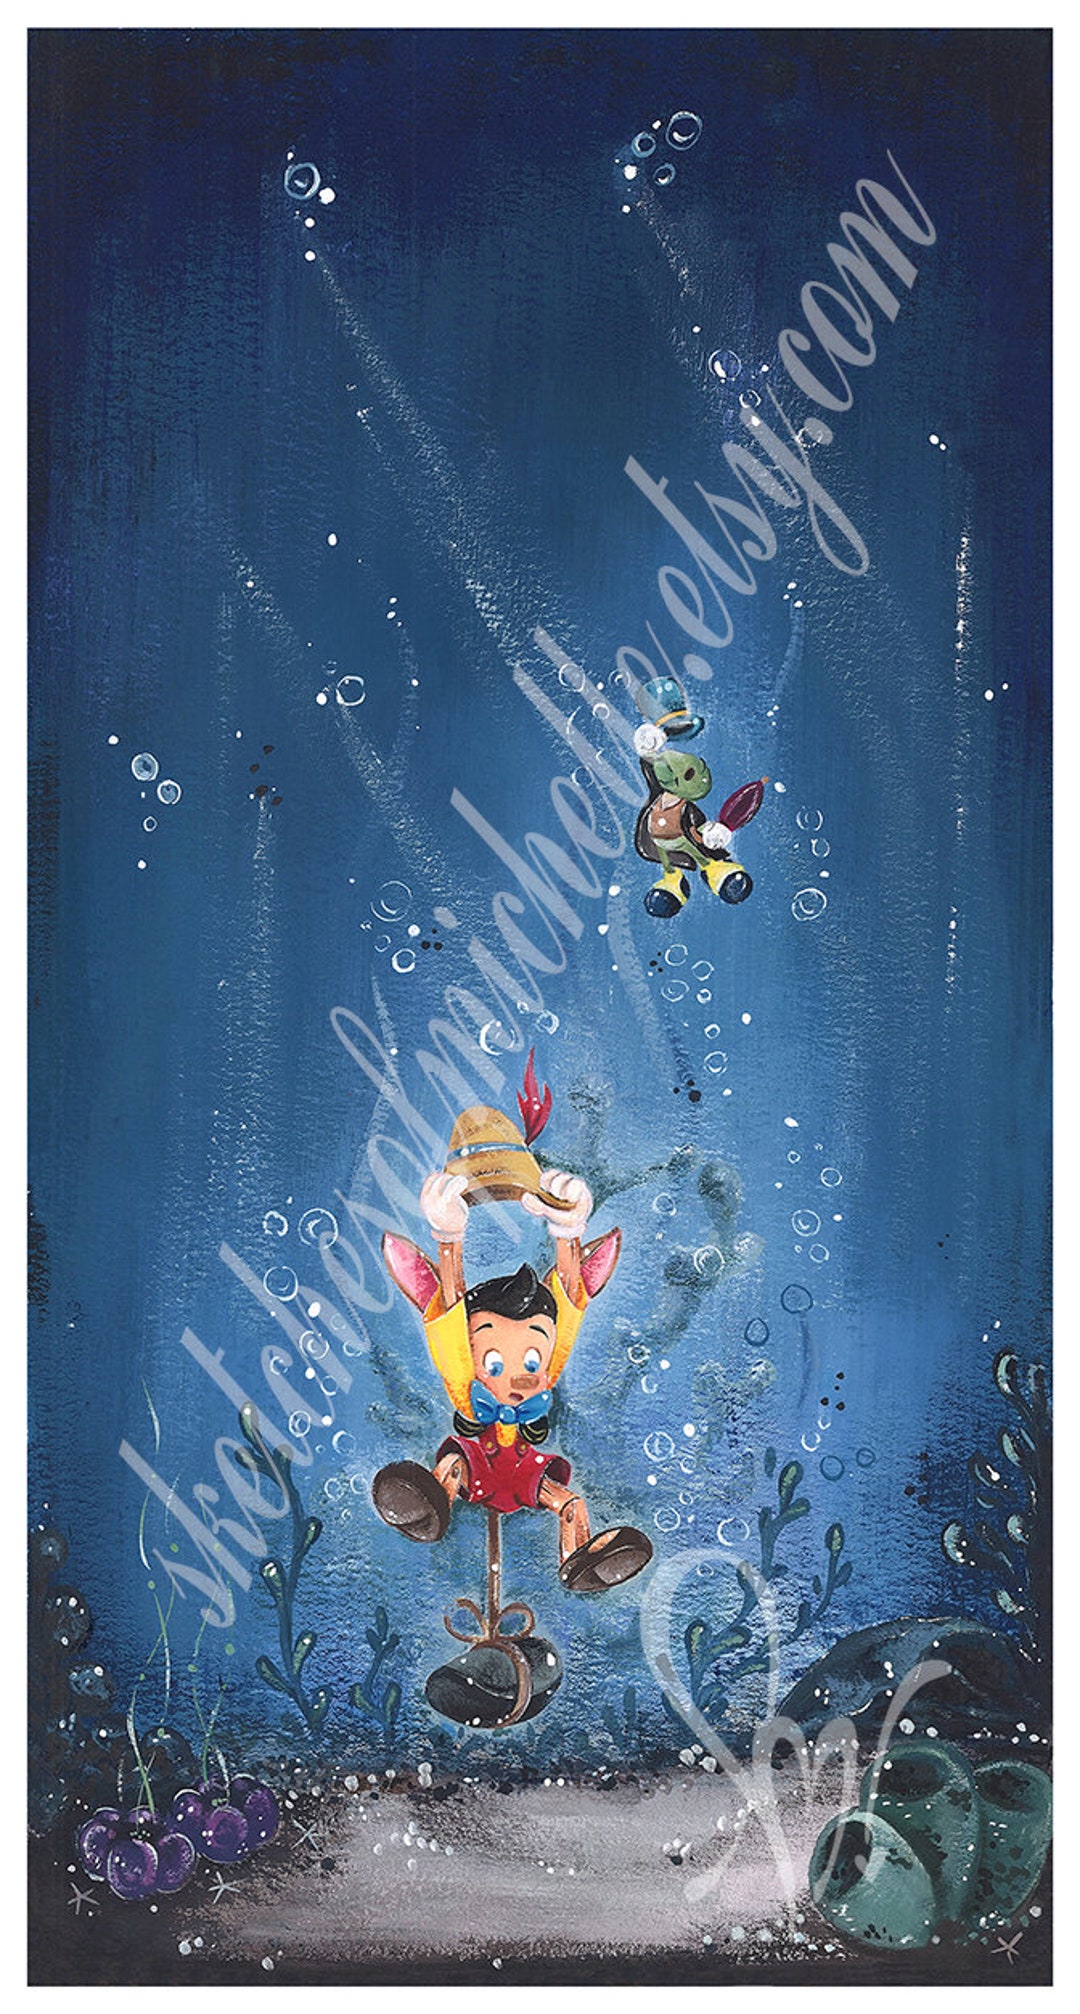 Pinocchio  Disney, Disney art, Pinocchio disney